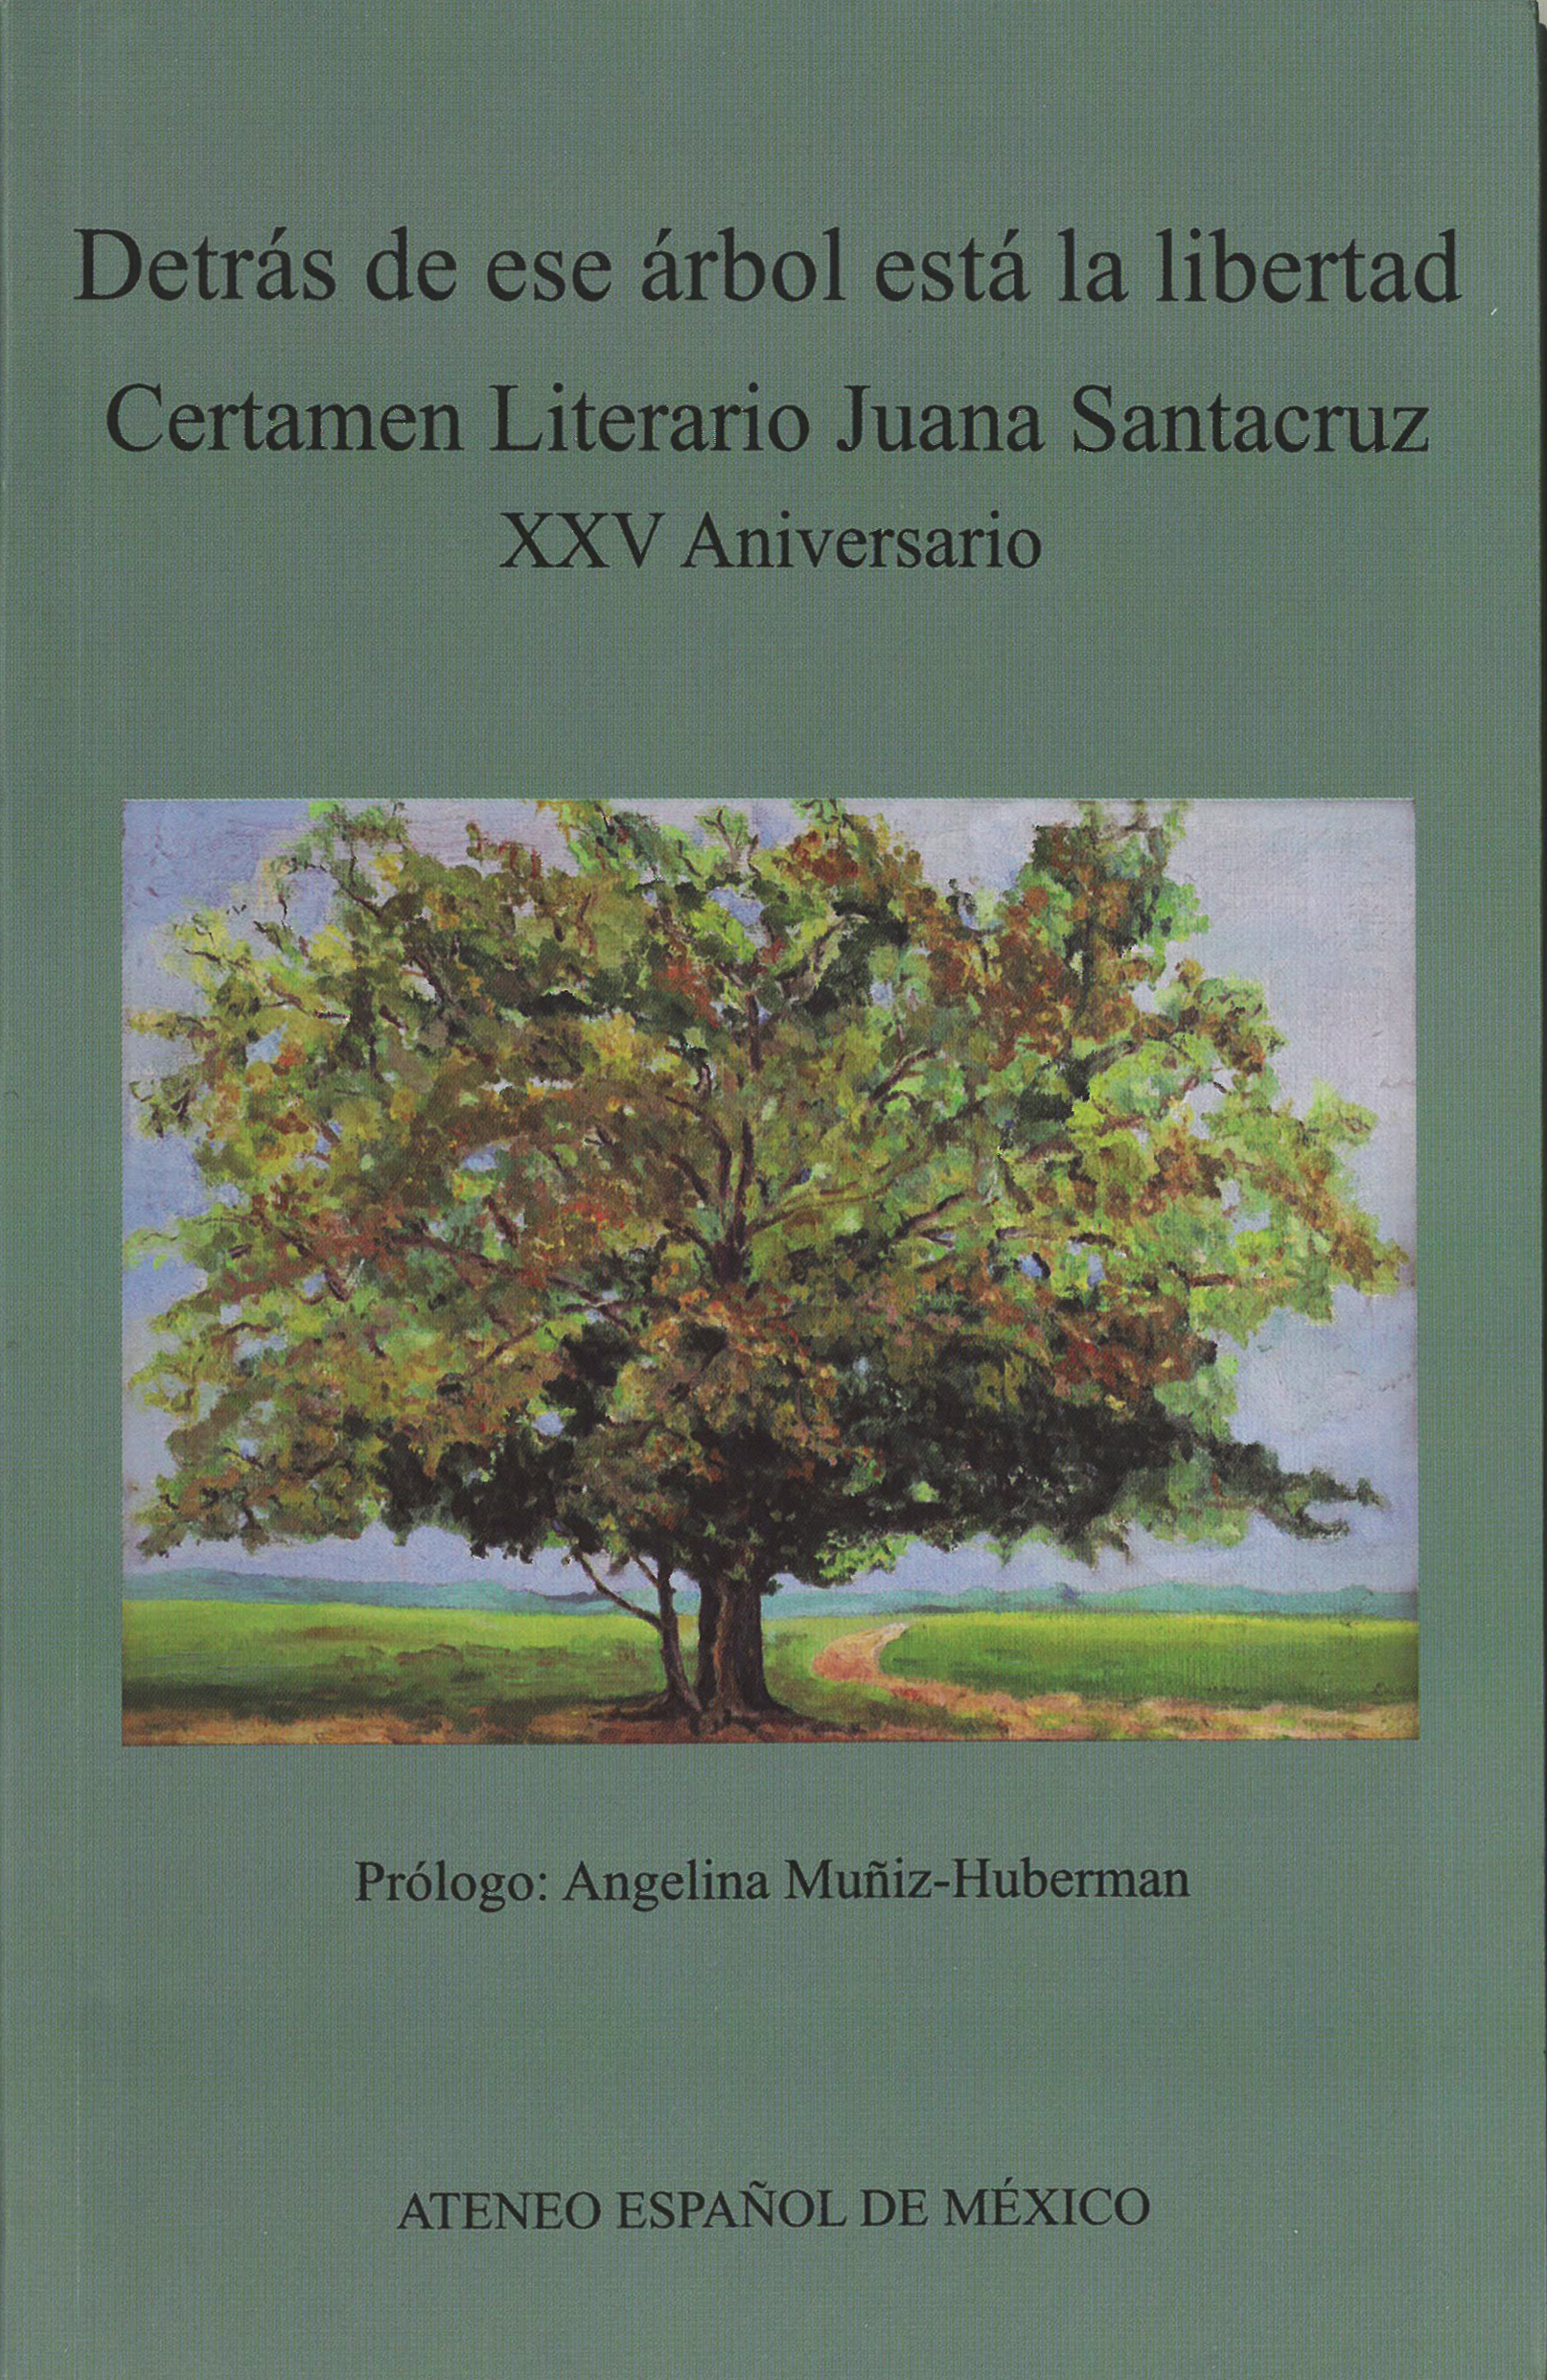 Detrás de ese árbol está la libertad. Certamen Literario Juana Santacruz. XXV Aniversario.-image